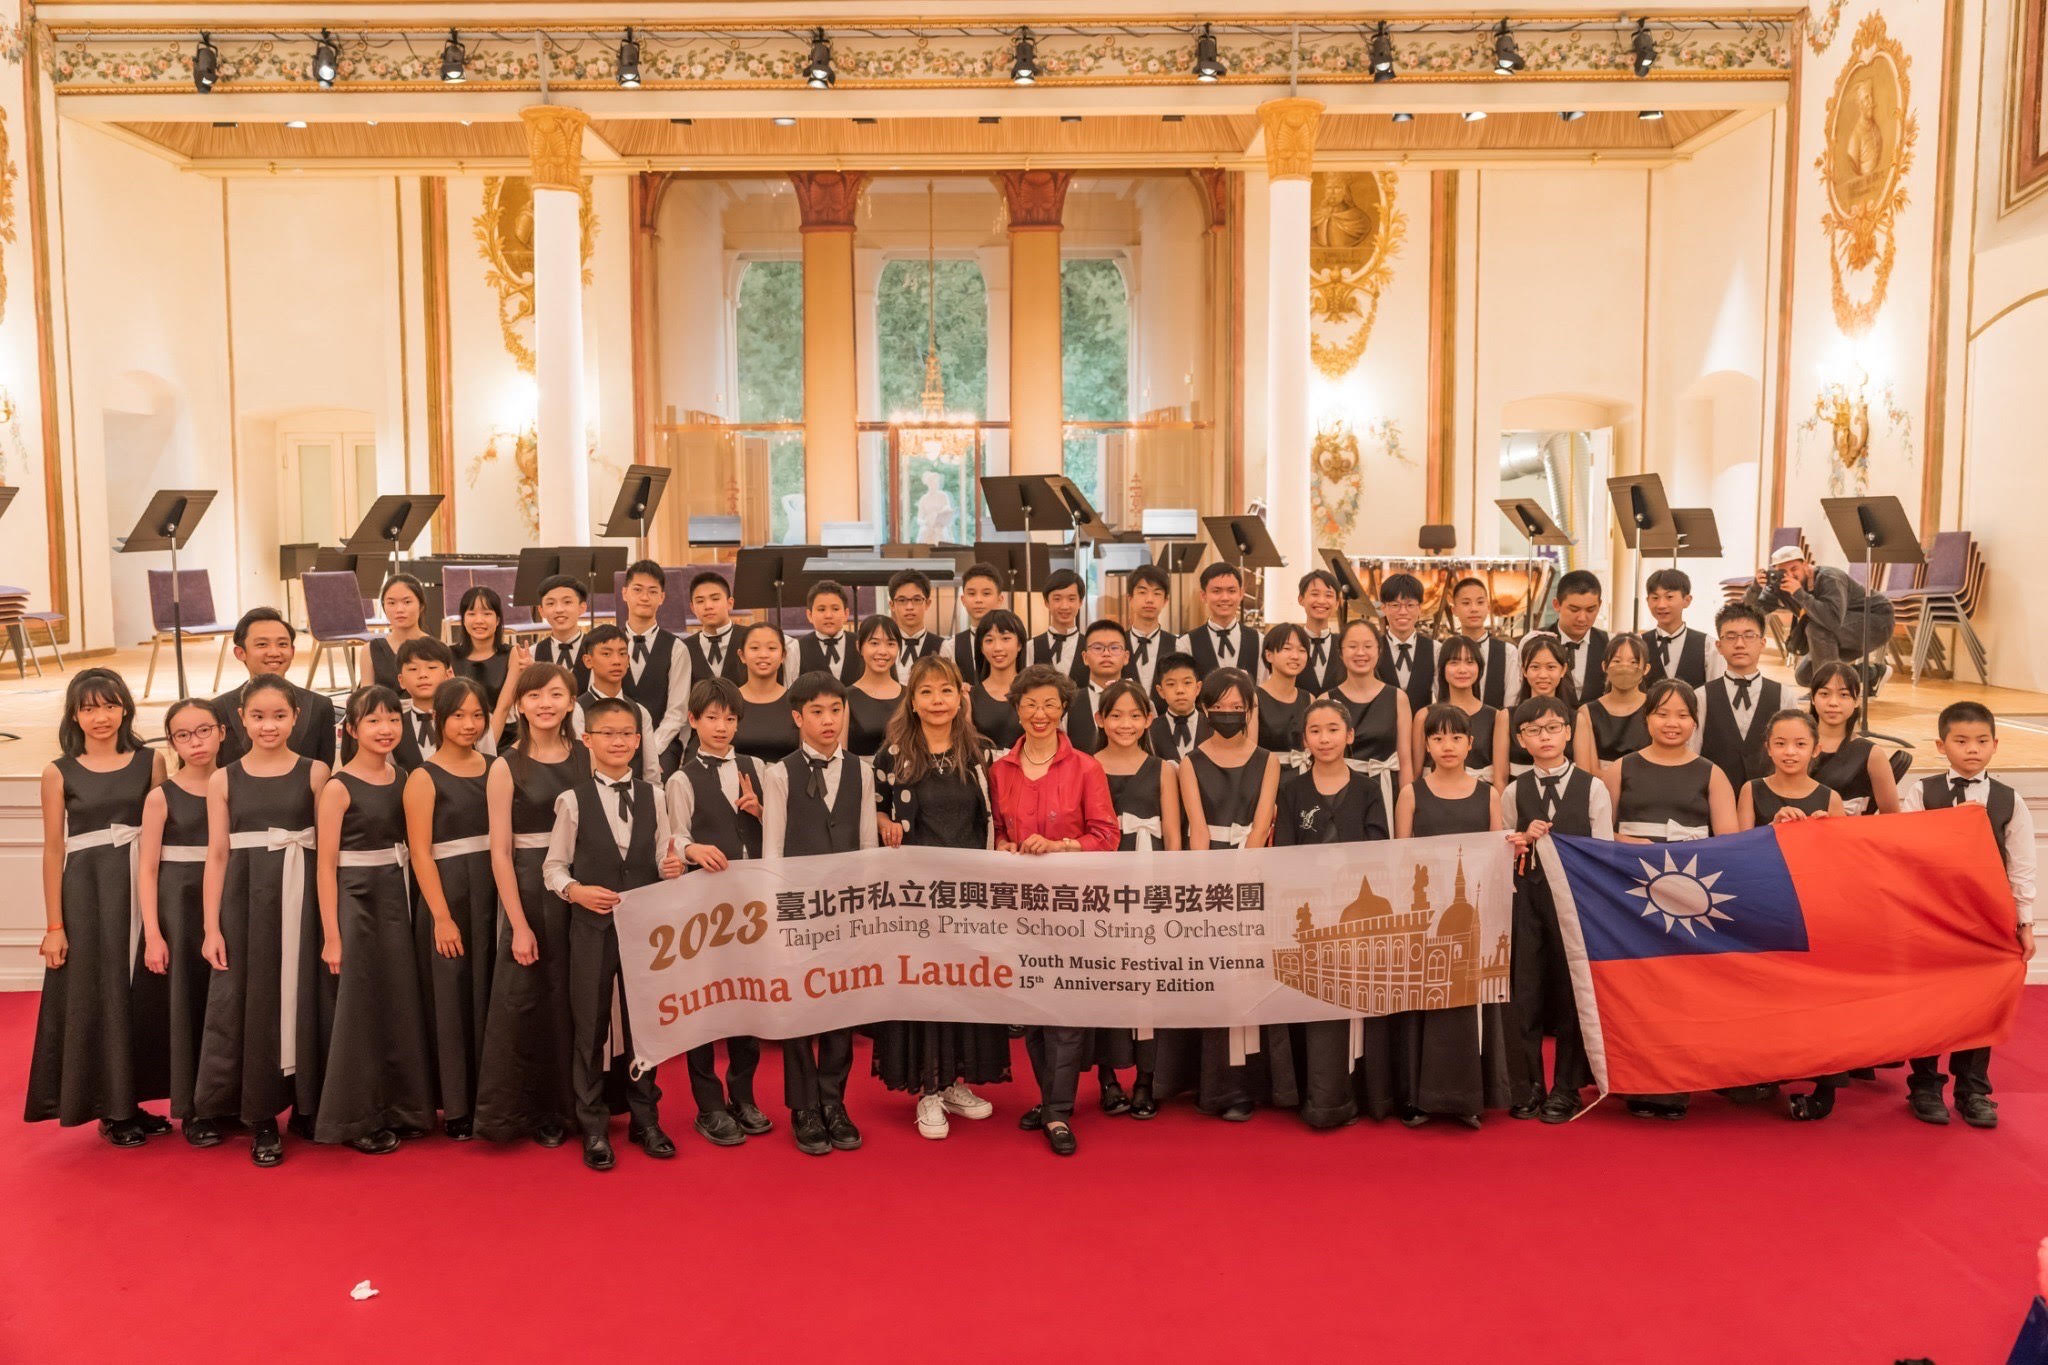 2023年榮獲第15屆至高榮耀維也納國際青少年音樂節 中學弦樂團 